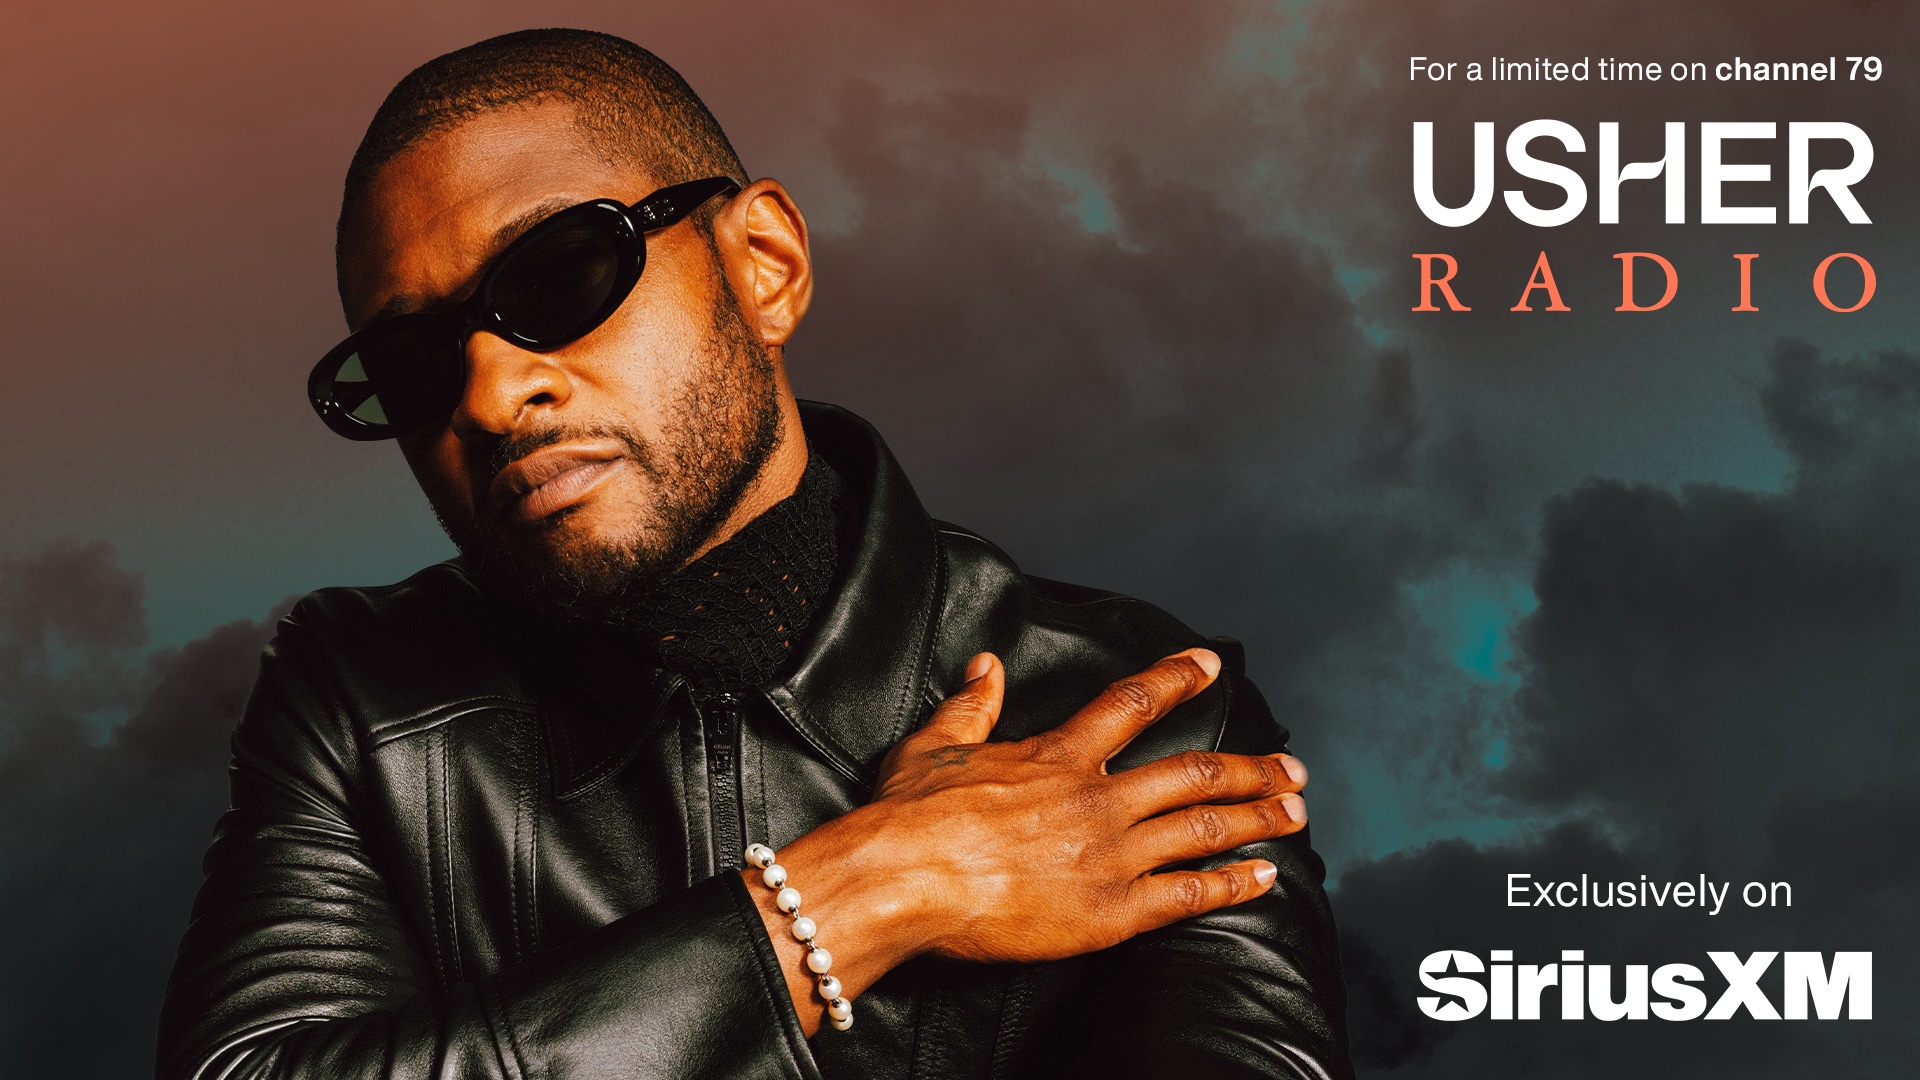 Usher Radio Plays 30 Years of Nonstop Usher Hits